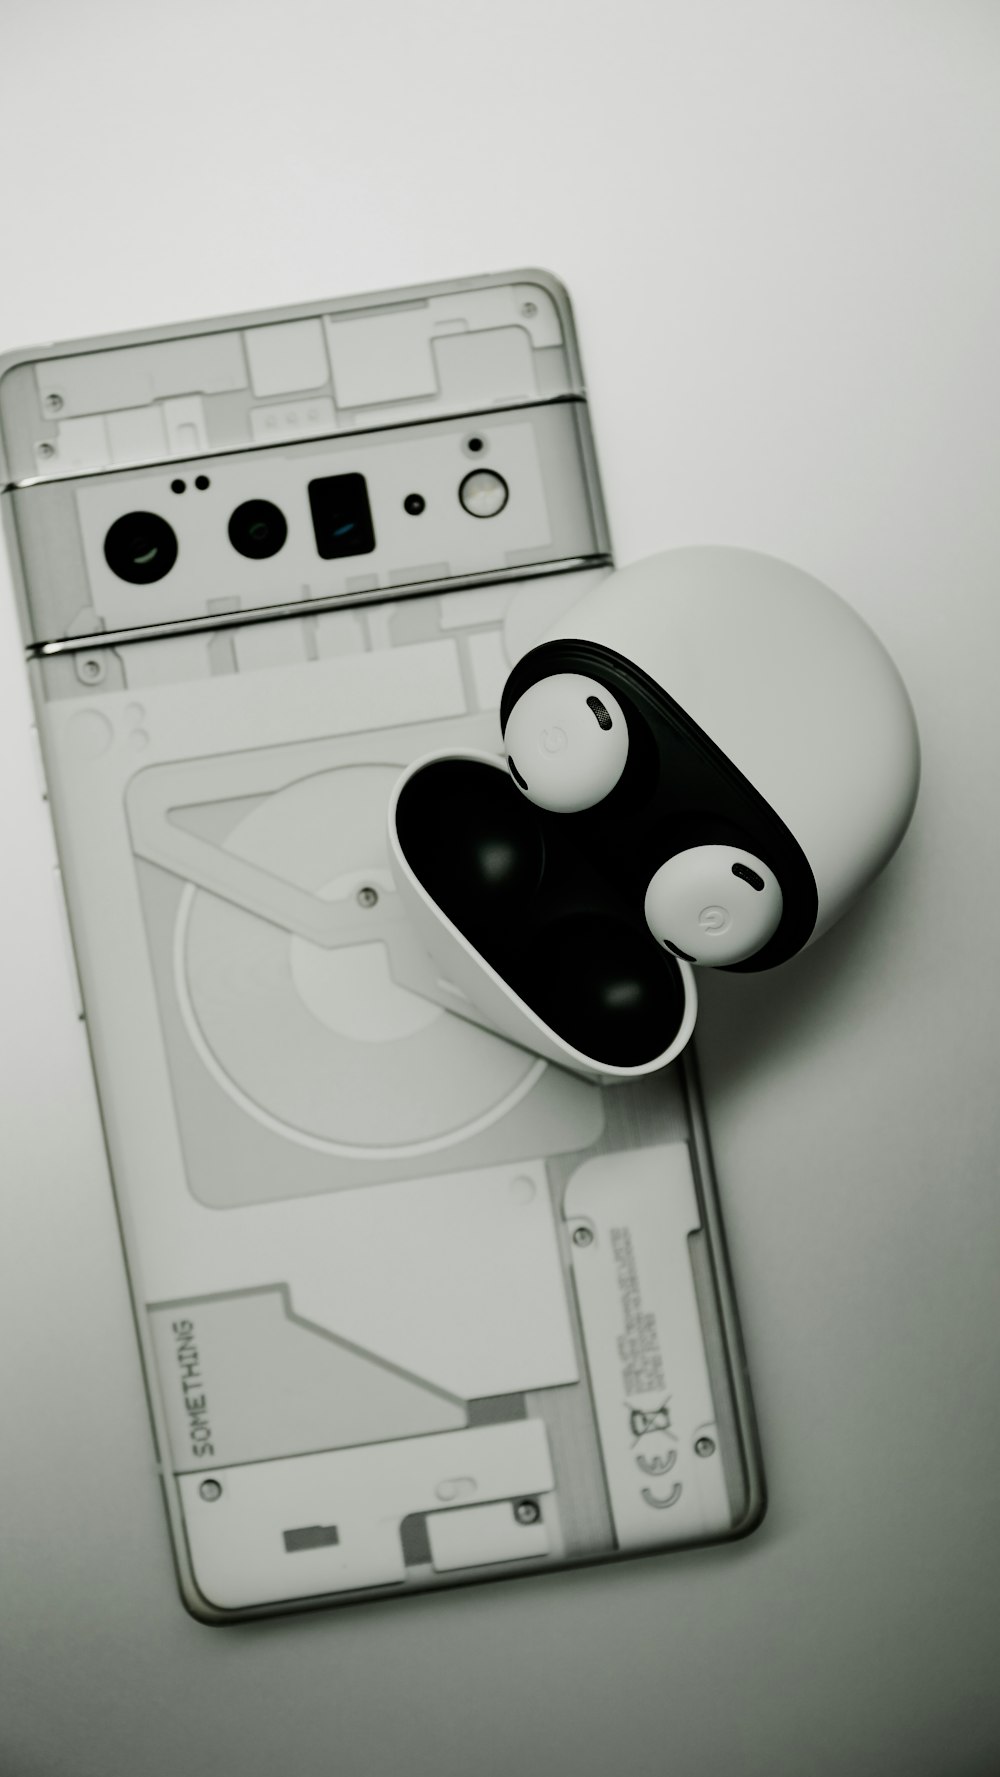 a white game controller